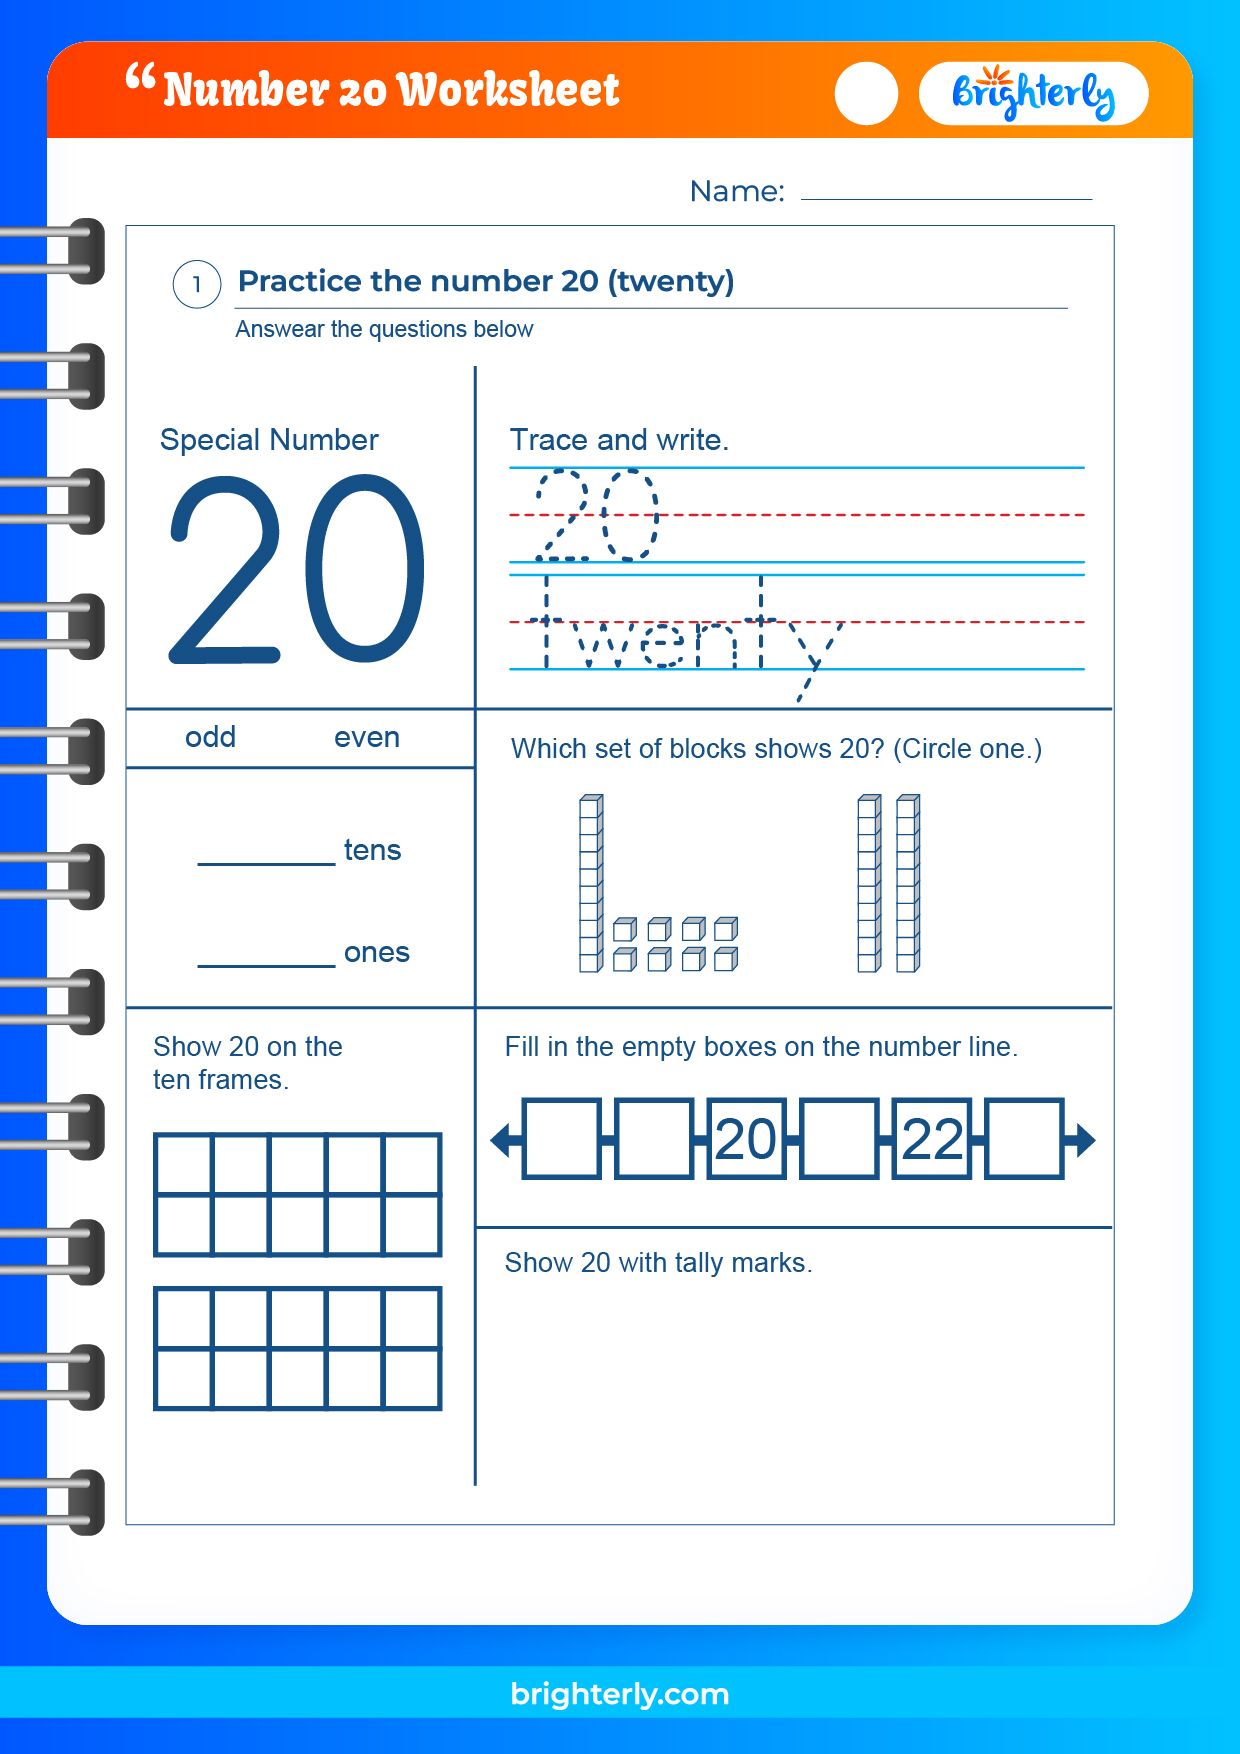 Free Printable Number 20 Twenty Worksheets For Kids Pdfs